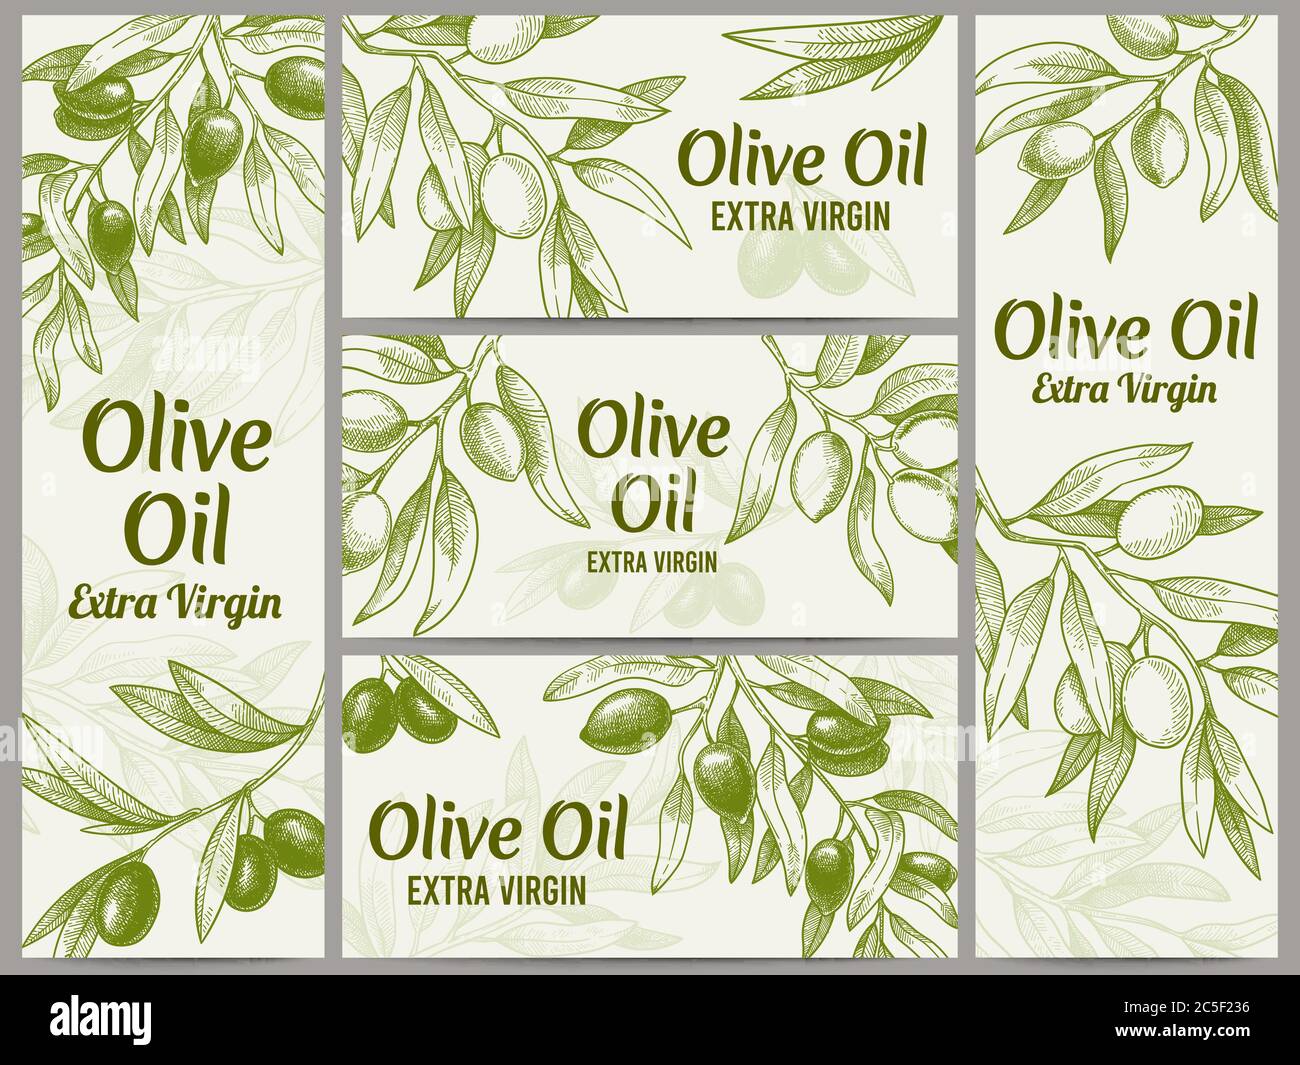 Bannière huile d'olive. Étiquettes d'huiles organiques, branches d'olives vertes et jeu d'illustrations vectorielles d'étiquettes vierges Illustration de Vecteur